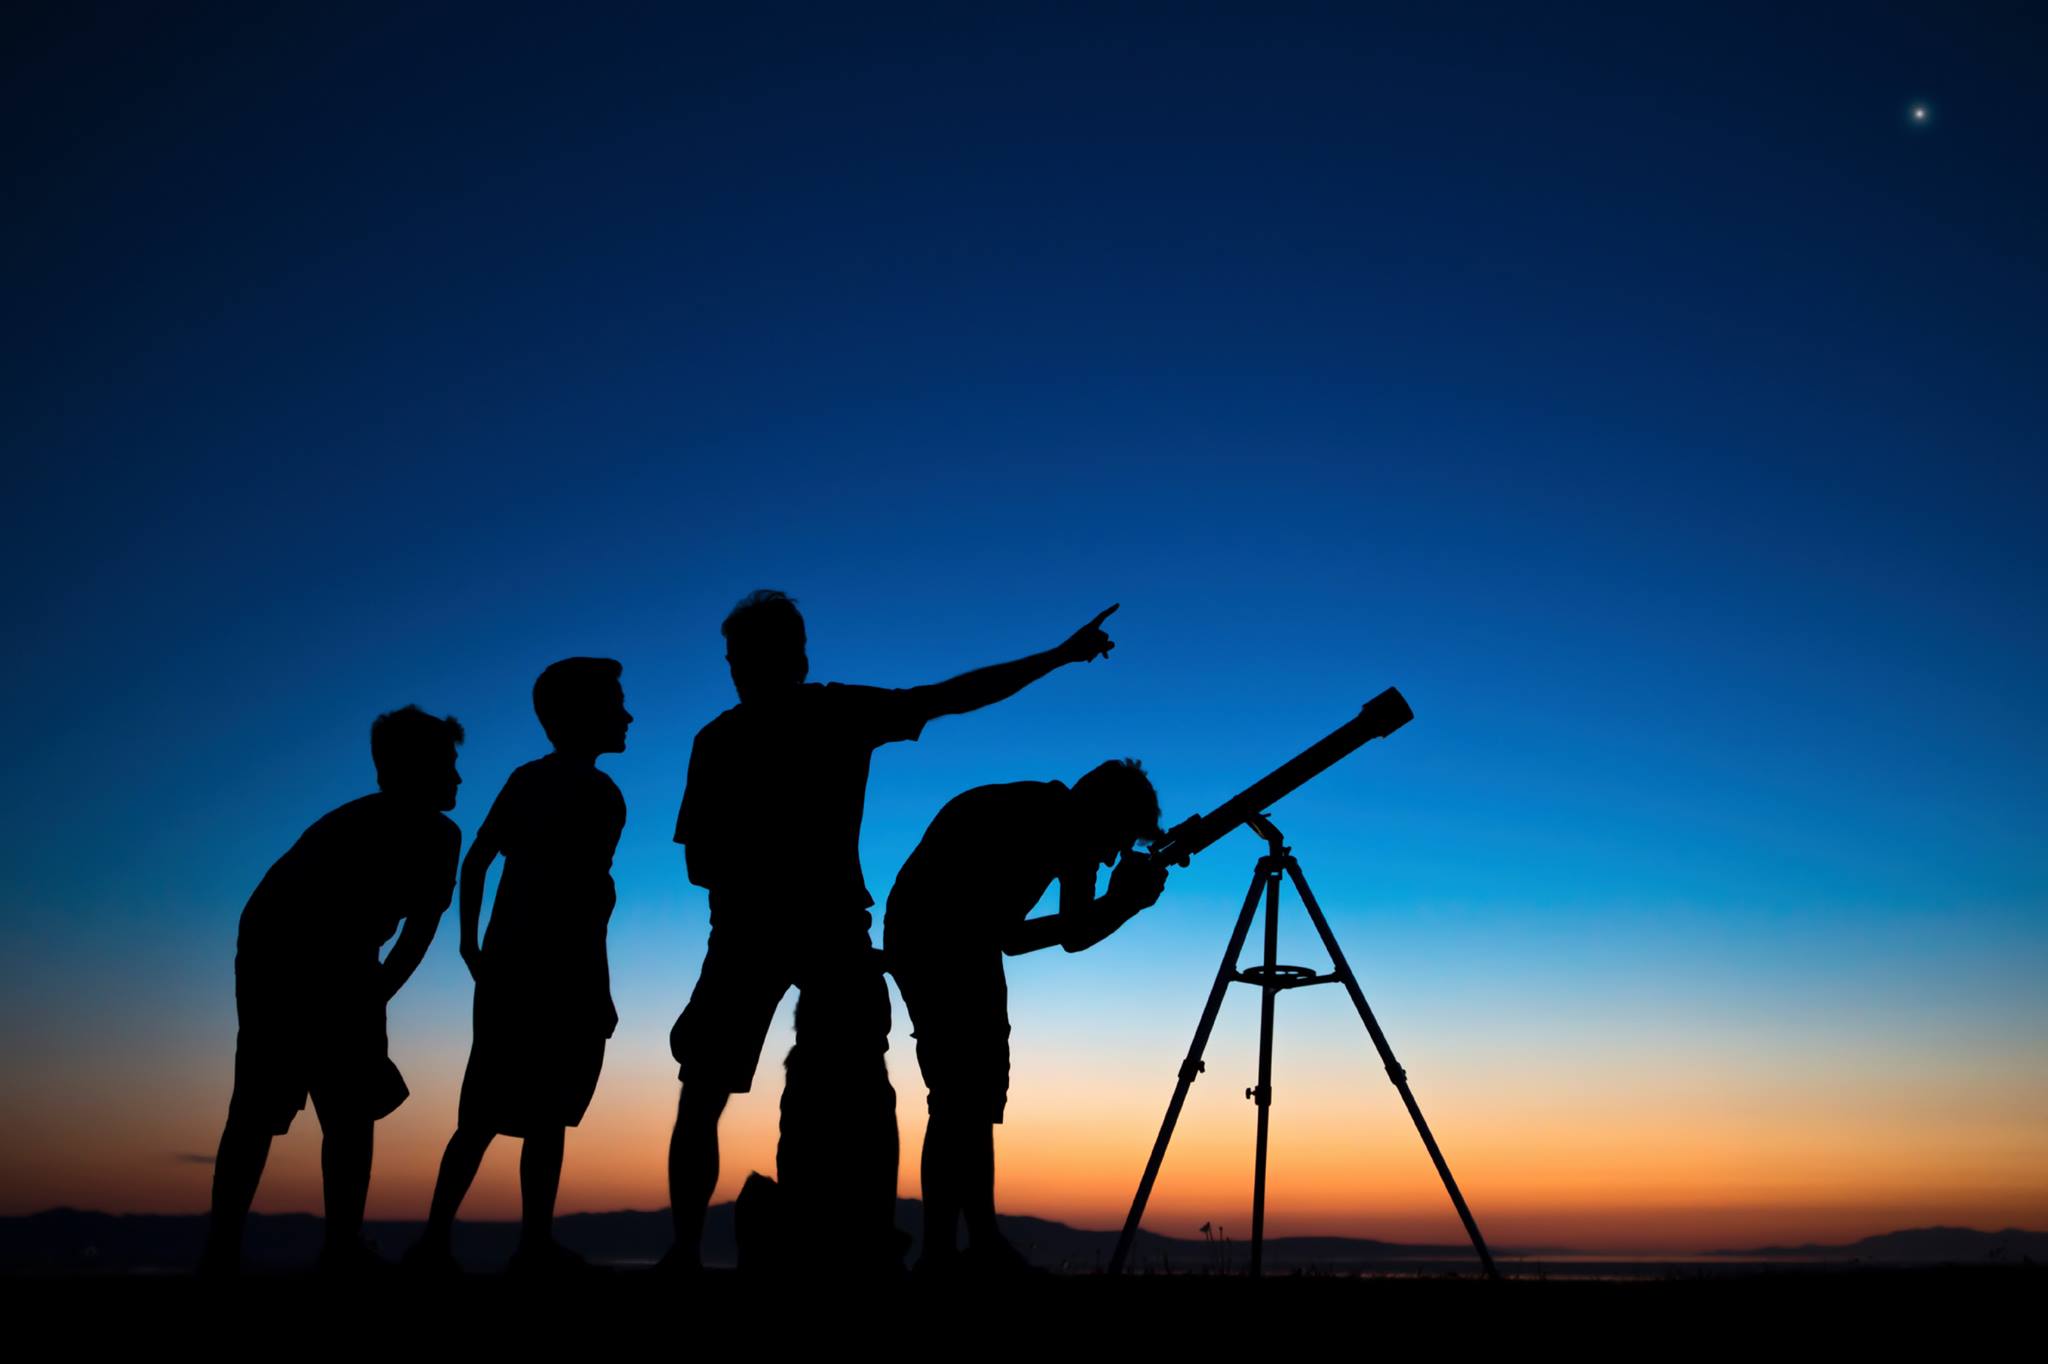  Observación de la Luna, los planetas Venus y Marte, y objetos del cielo de verano